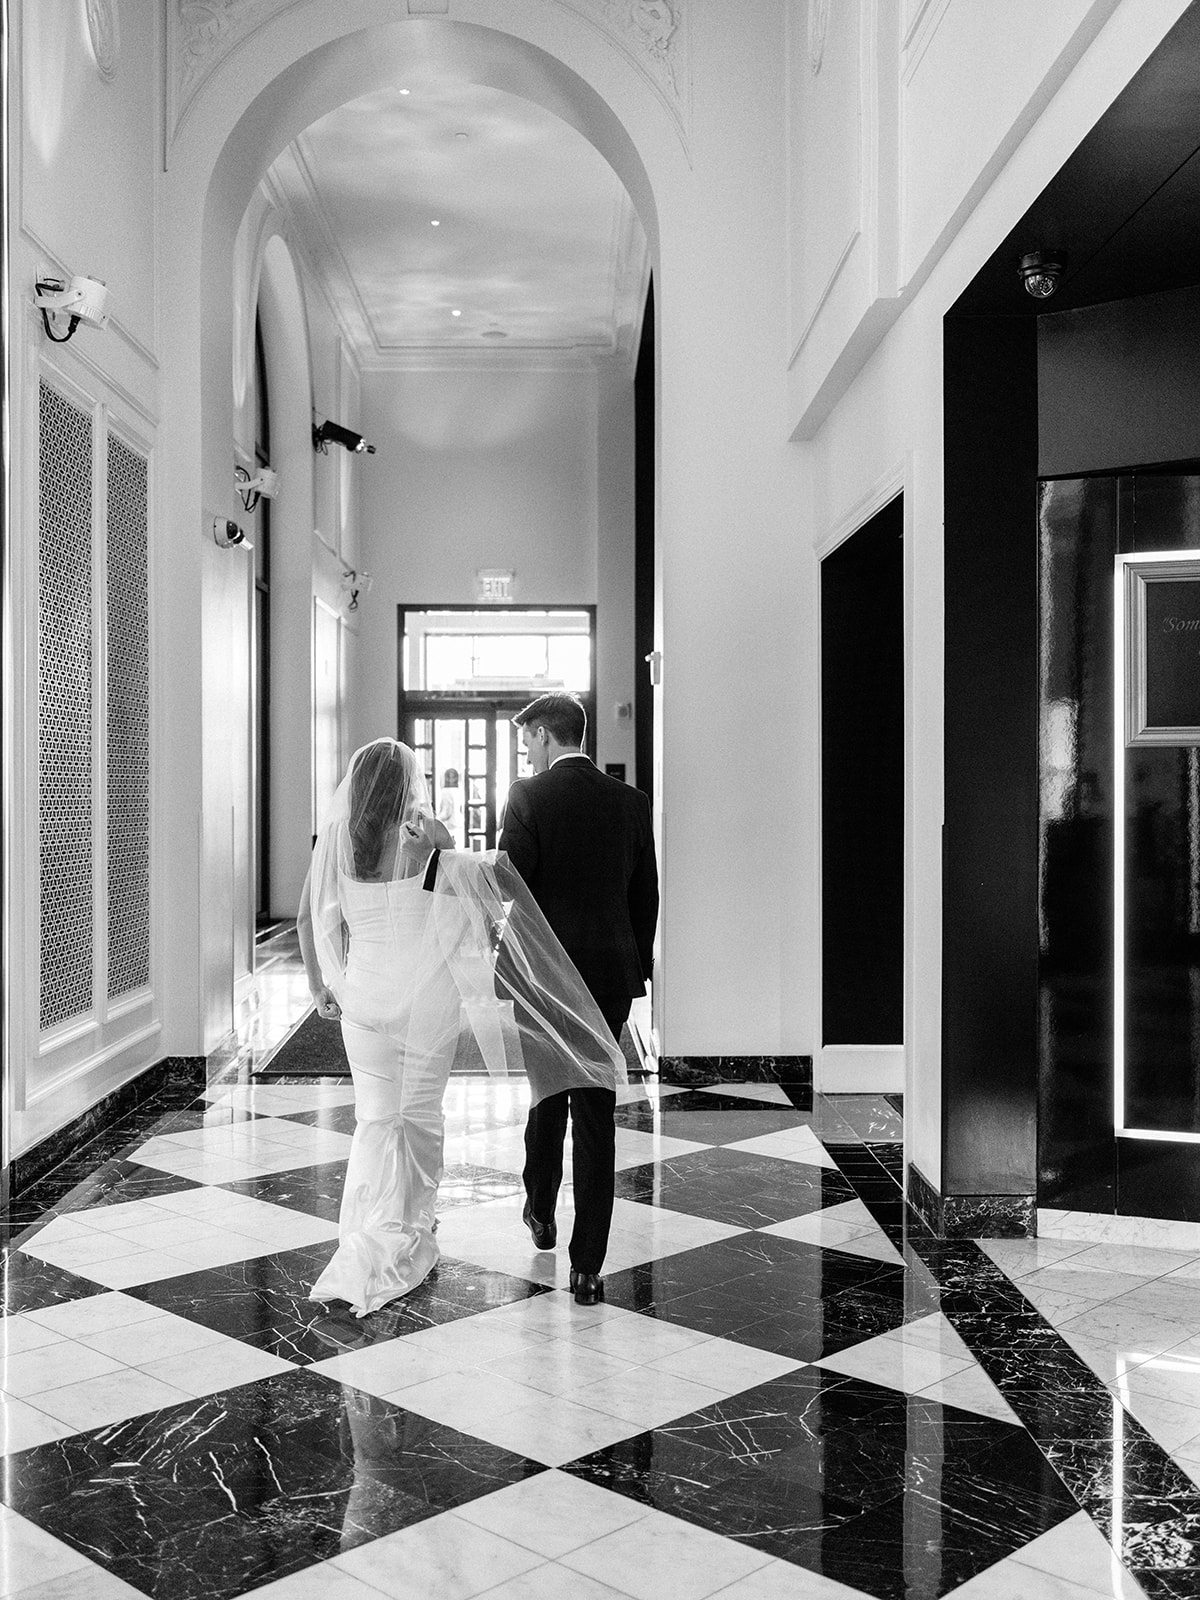 Hotel Washington Wedding by Jennifer Nolan Photography